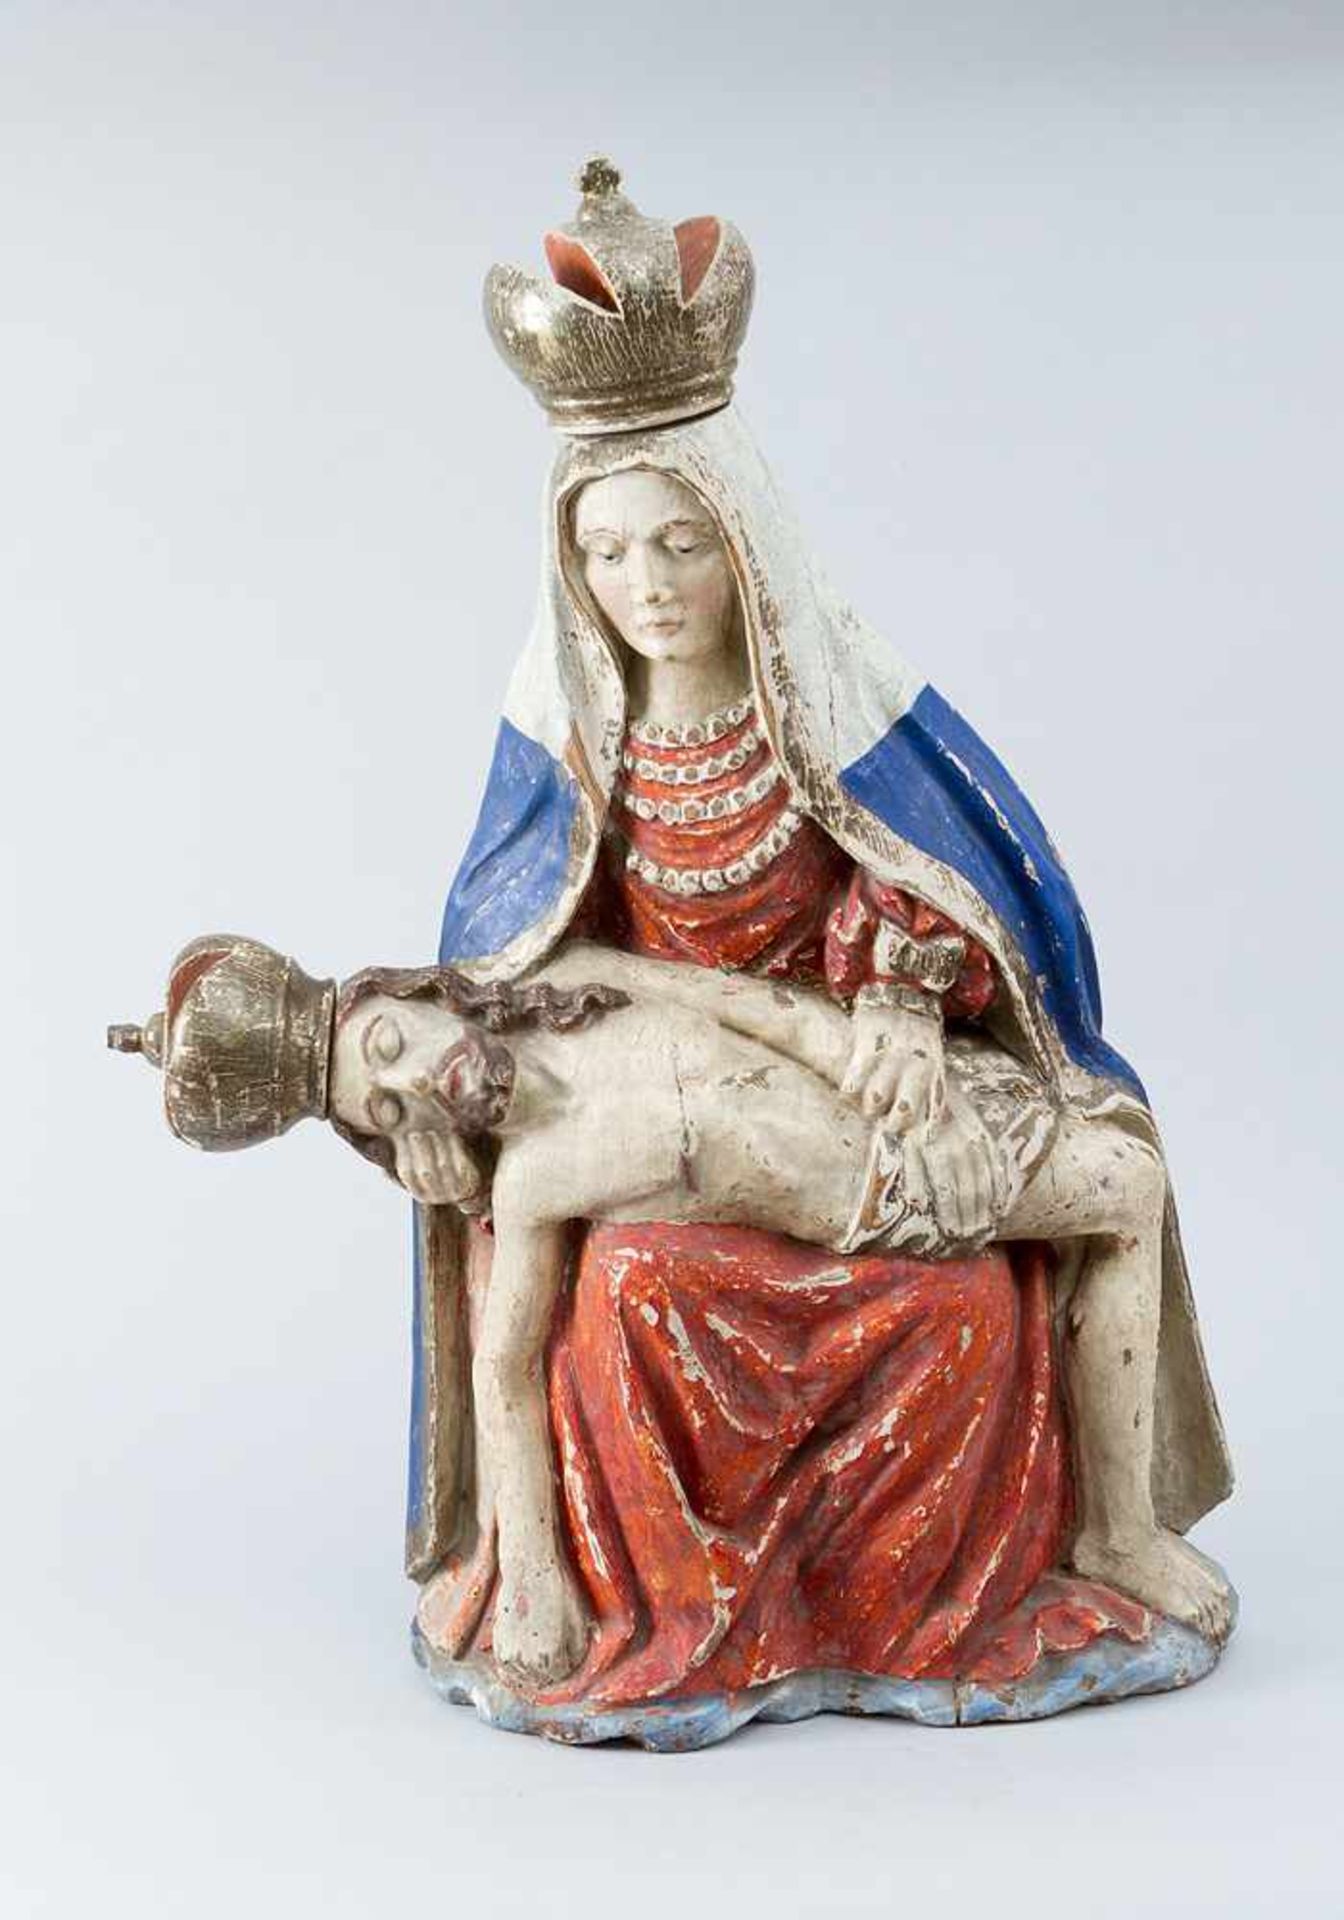 Maria and Jesus sculpture